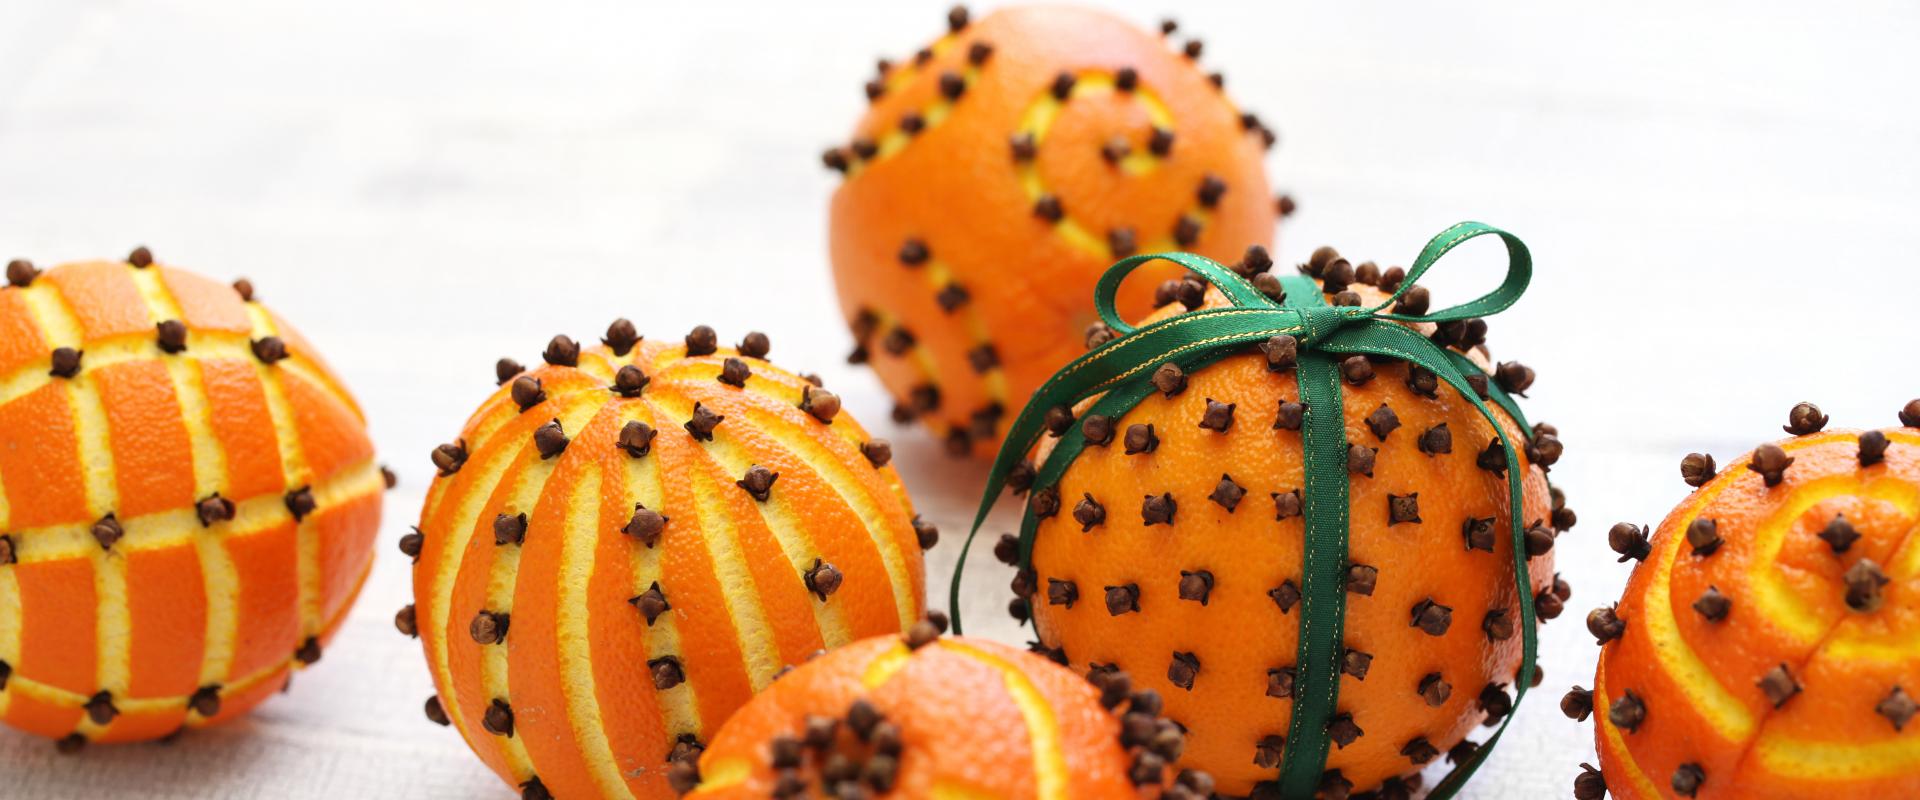 Nadolig - pomandwyr oren yn frith o ewin / Christmas - orange pomanders studded with cloves